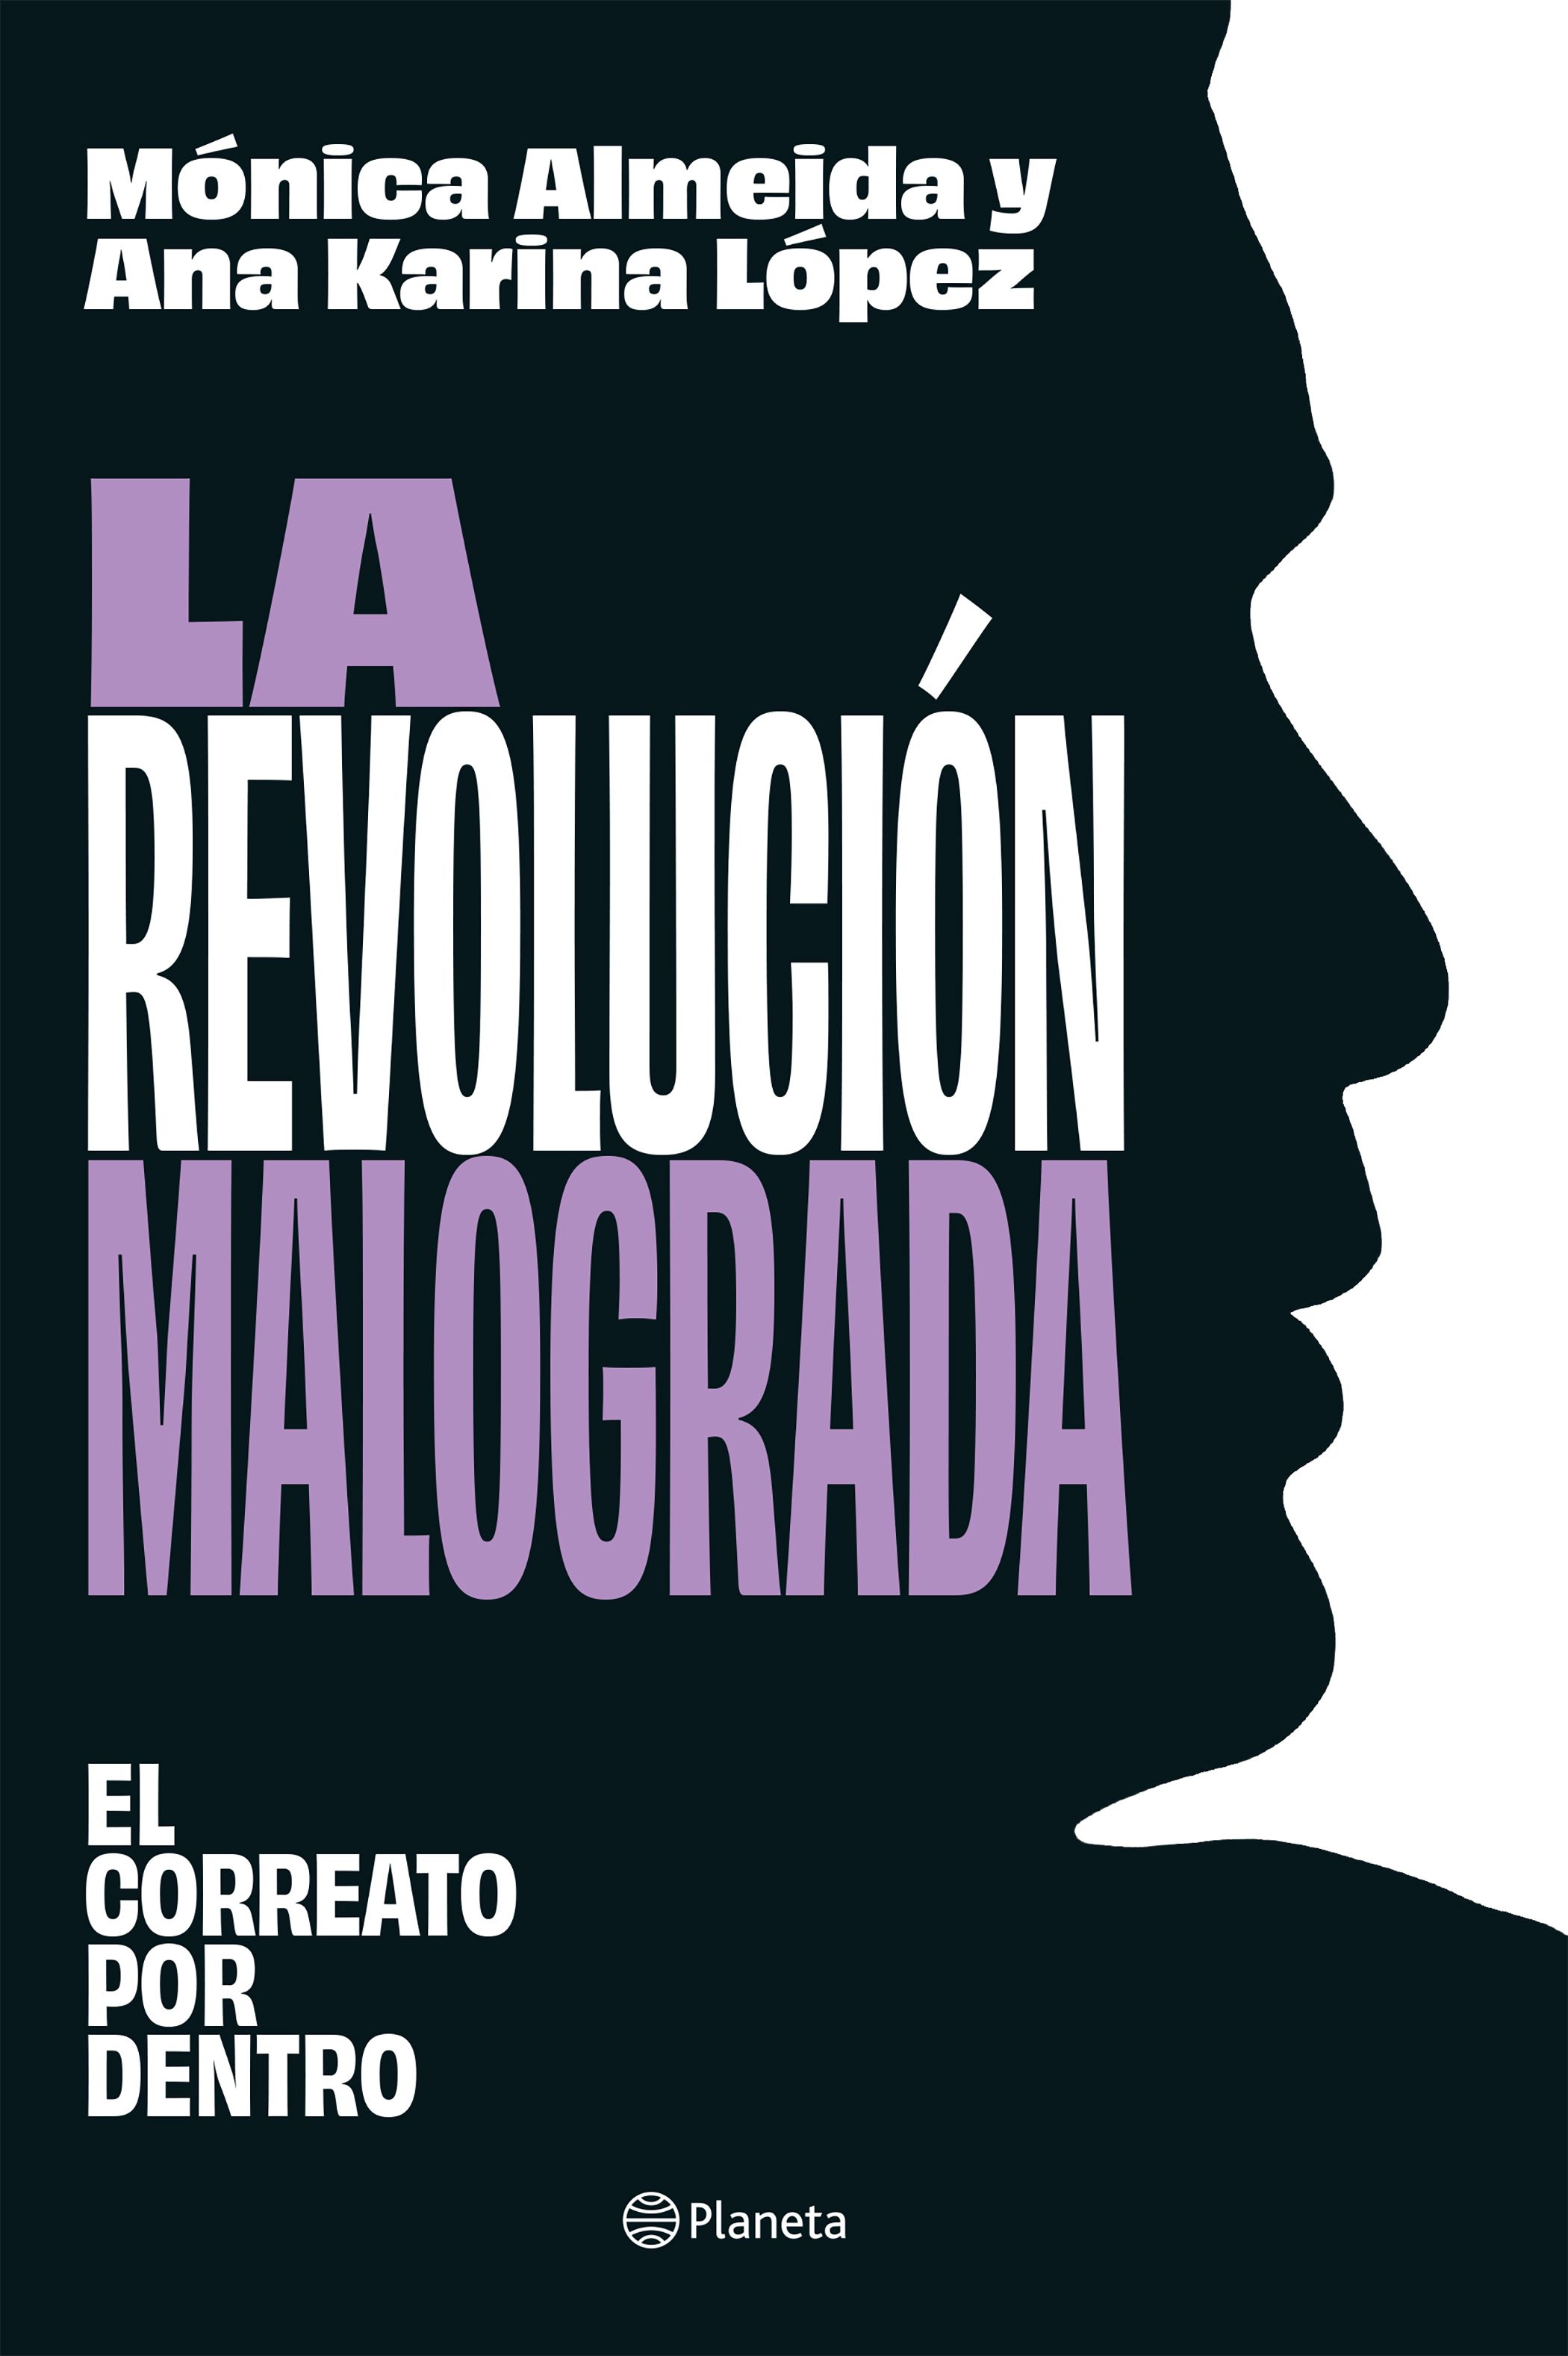 La Revolución Malograda: el correato por dentro se publicó en mayo de este año.